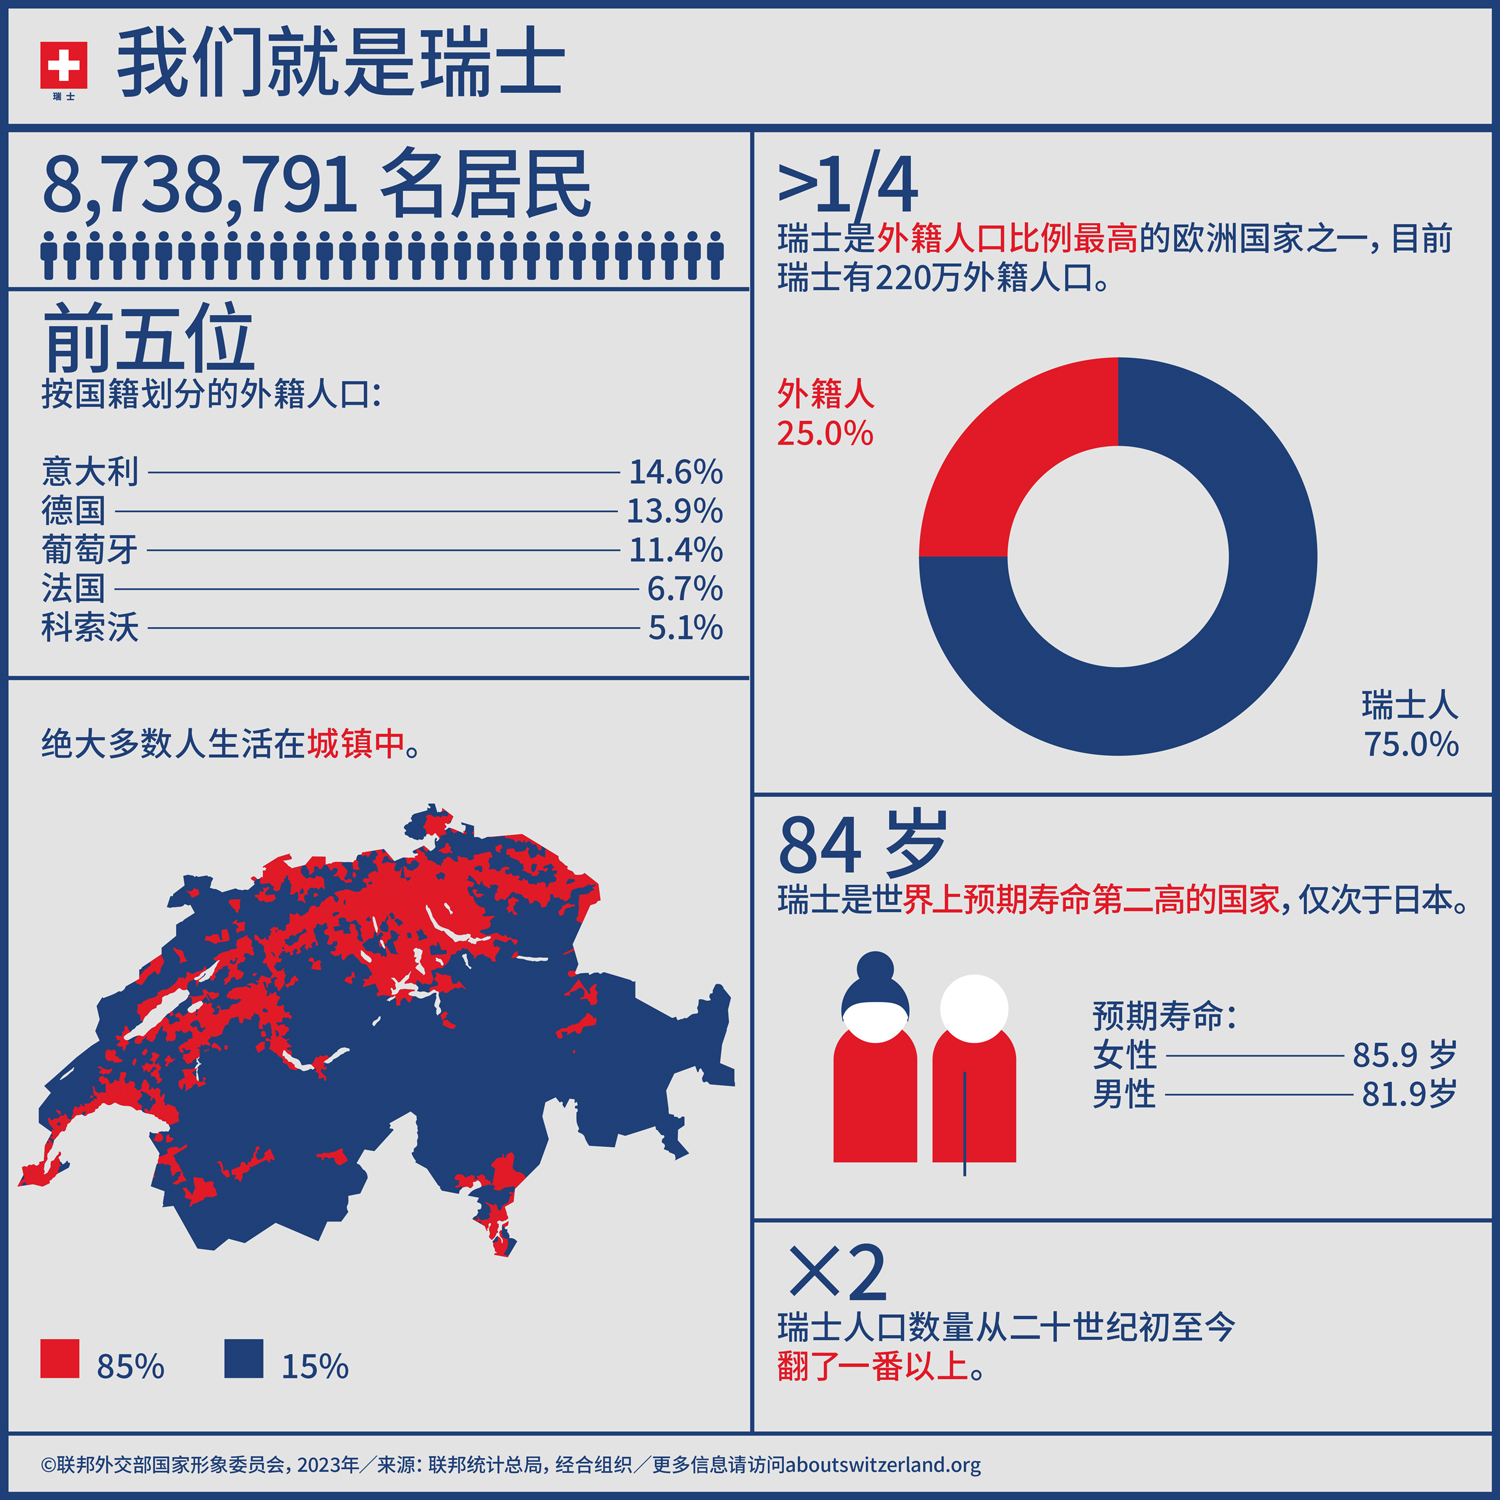 这张信息图上介绍了一组关于瑞士人口的重要数字。